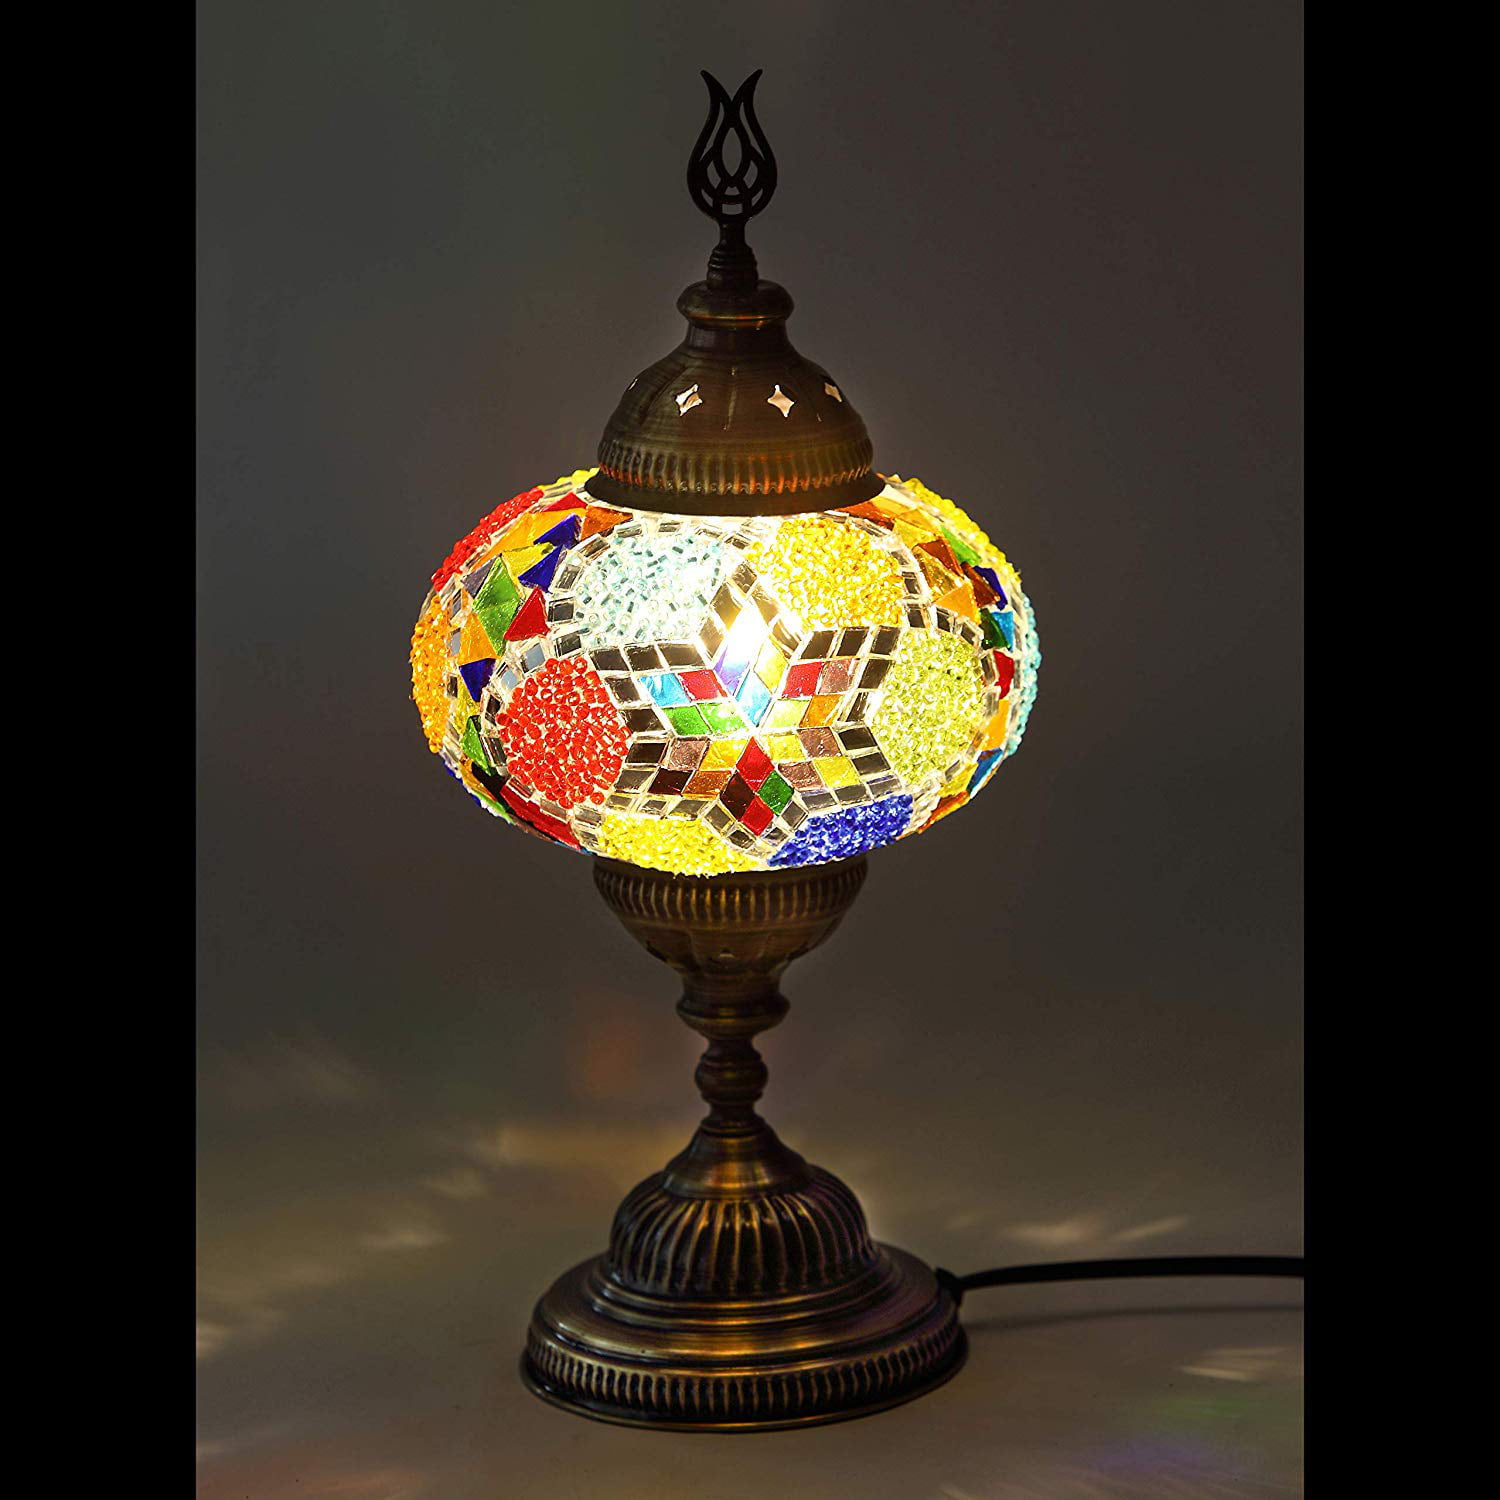 Lamodahome 31 Models Mosaic Lamp Handmade Turkish 7 Globes Mosaic